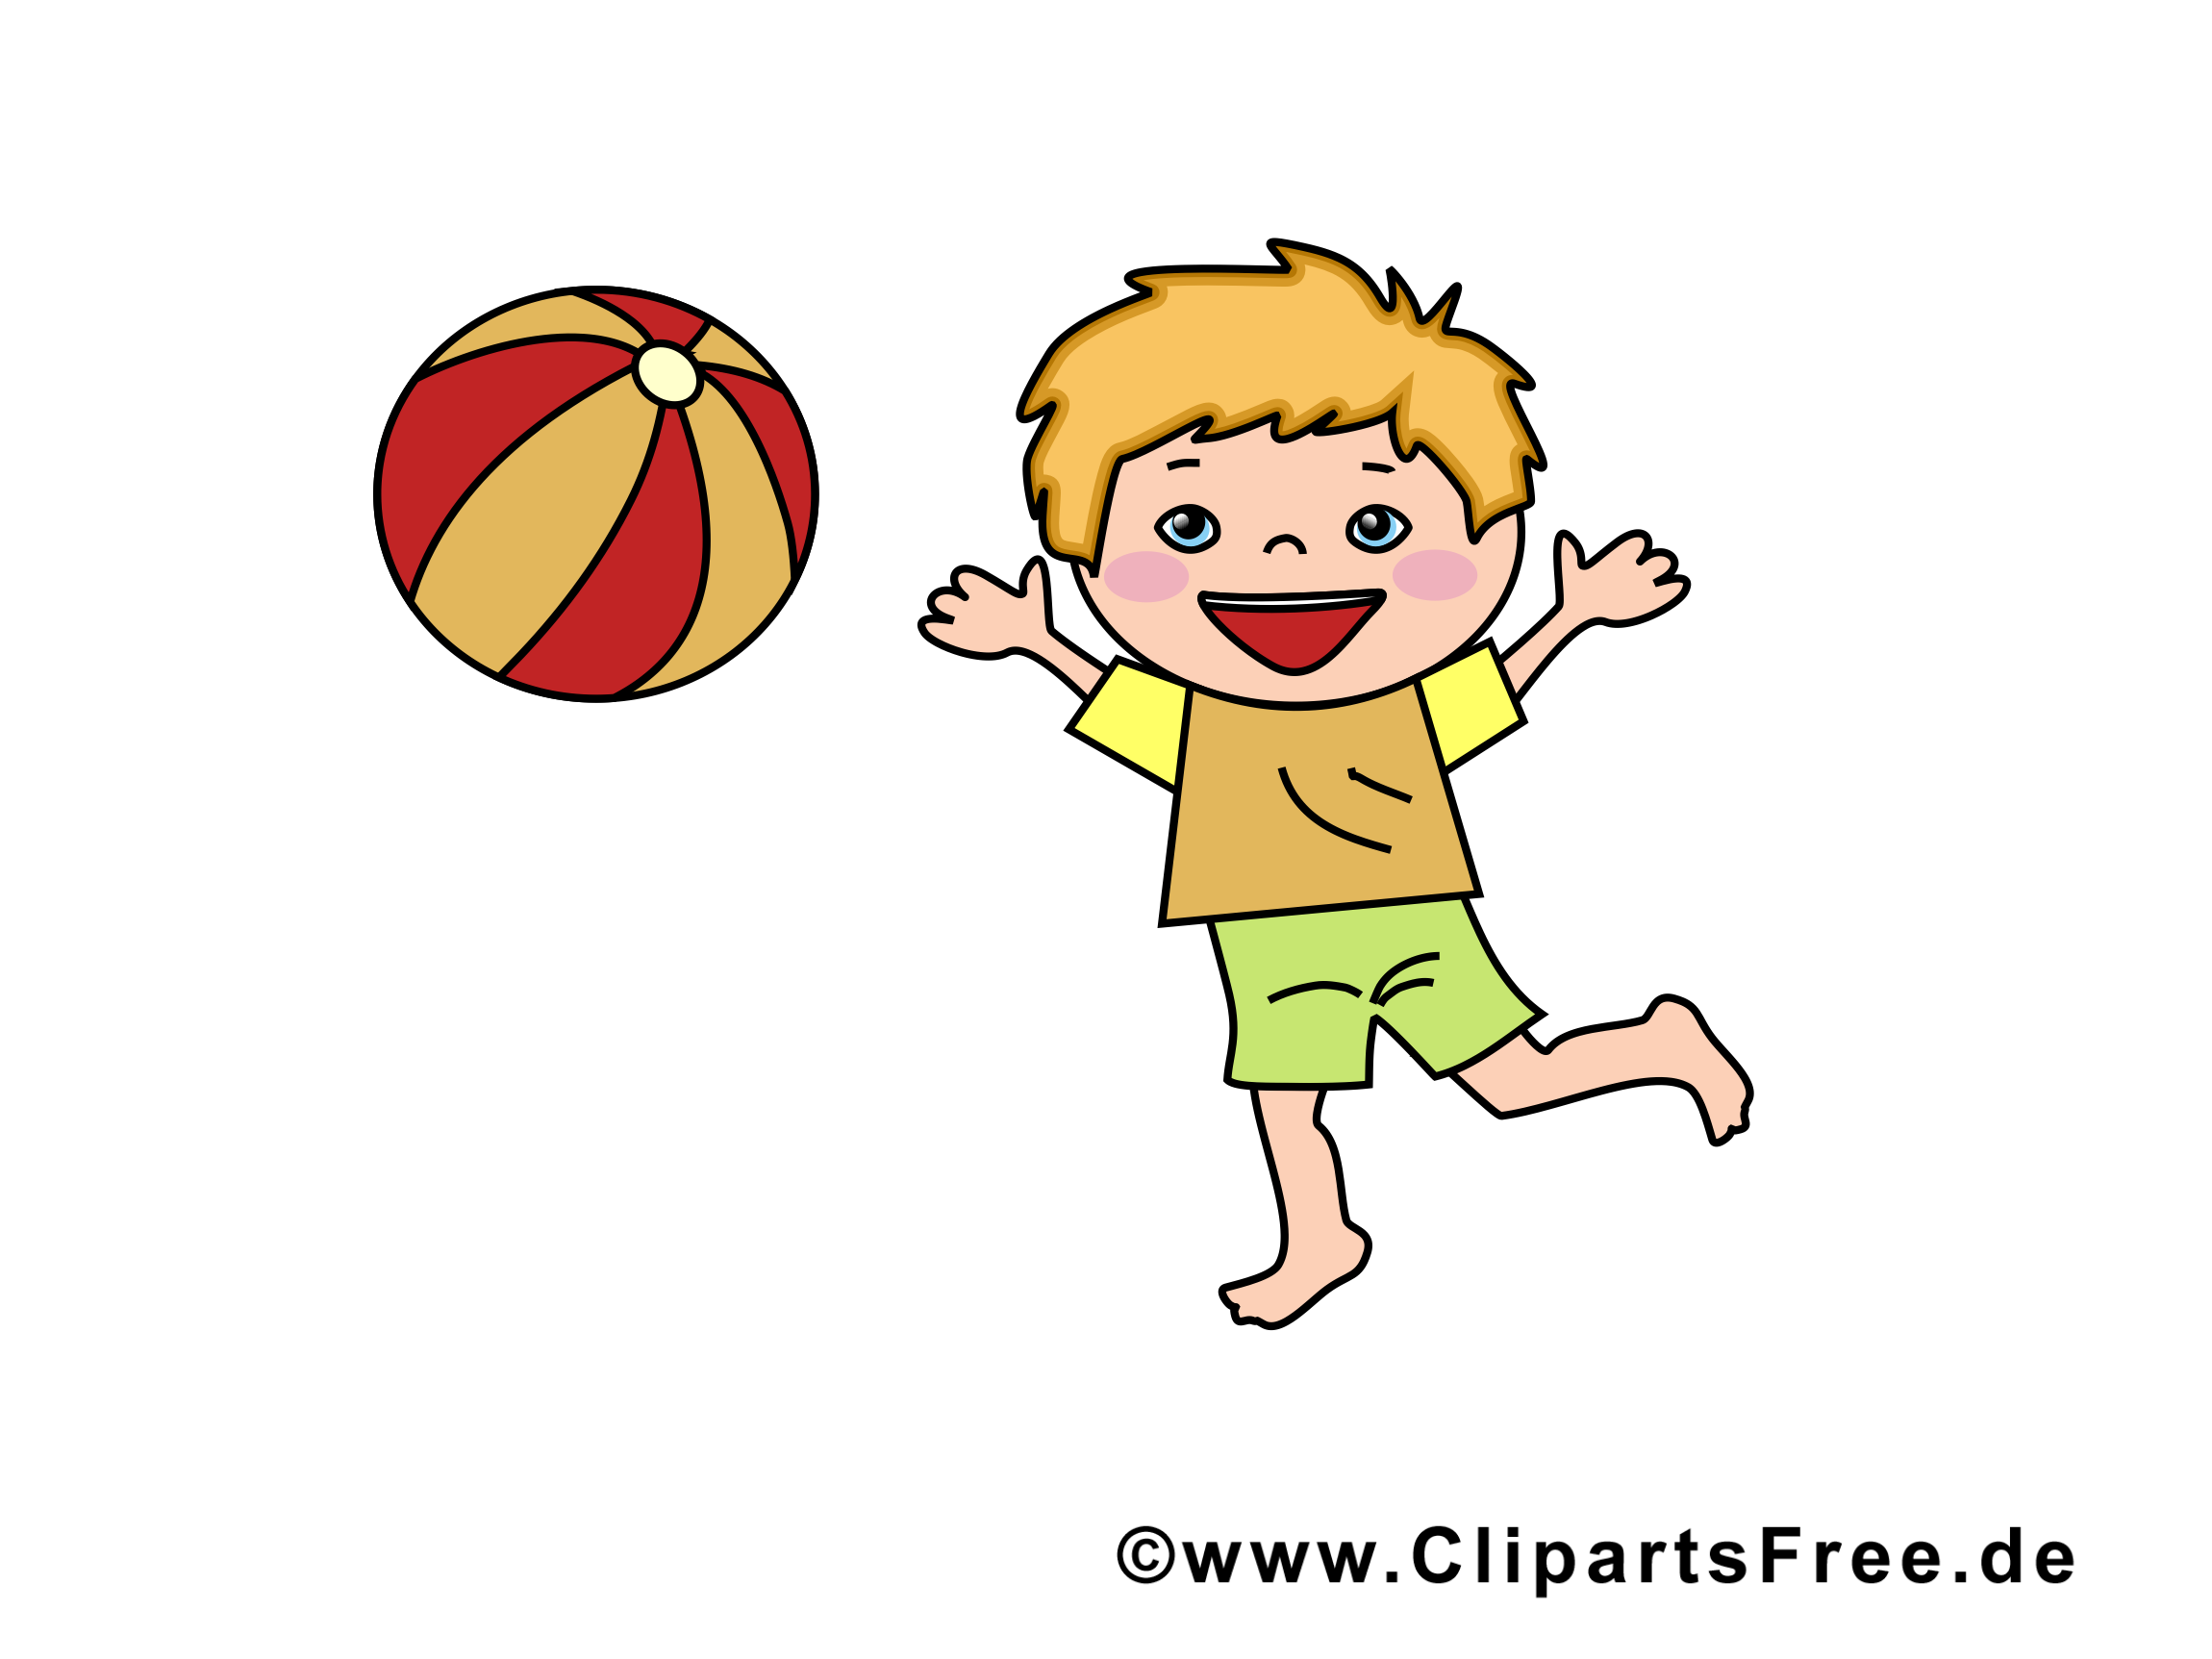 Balle images - Enfant dessins gratuits